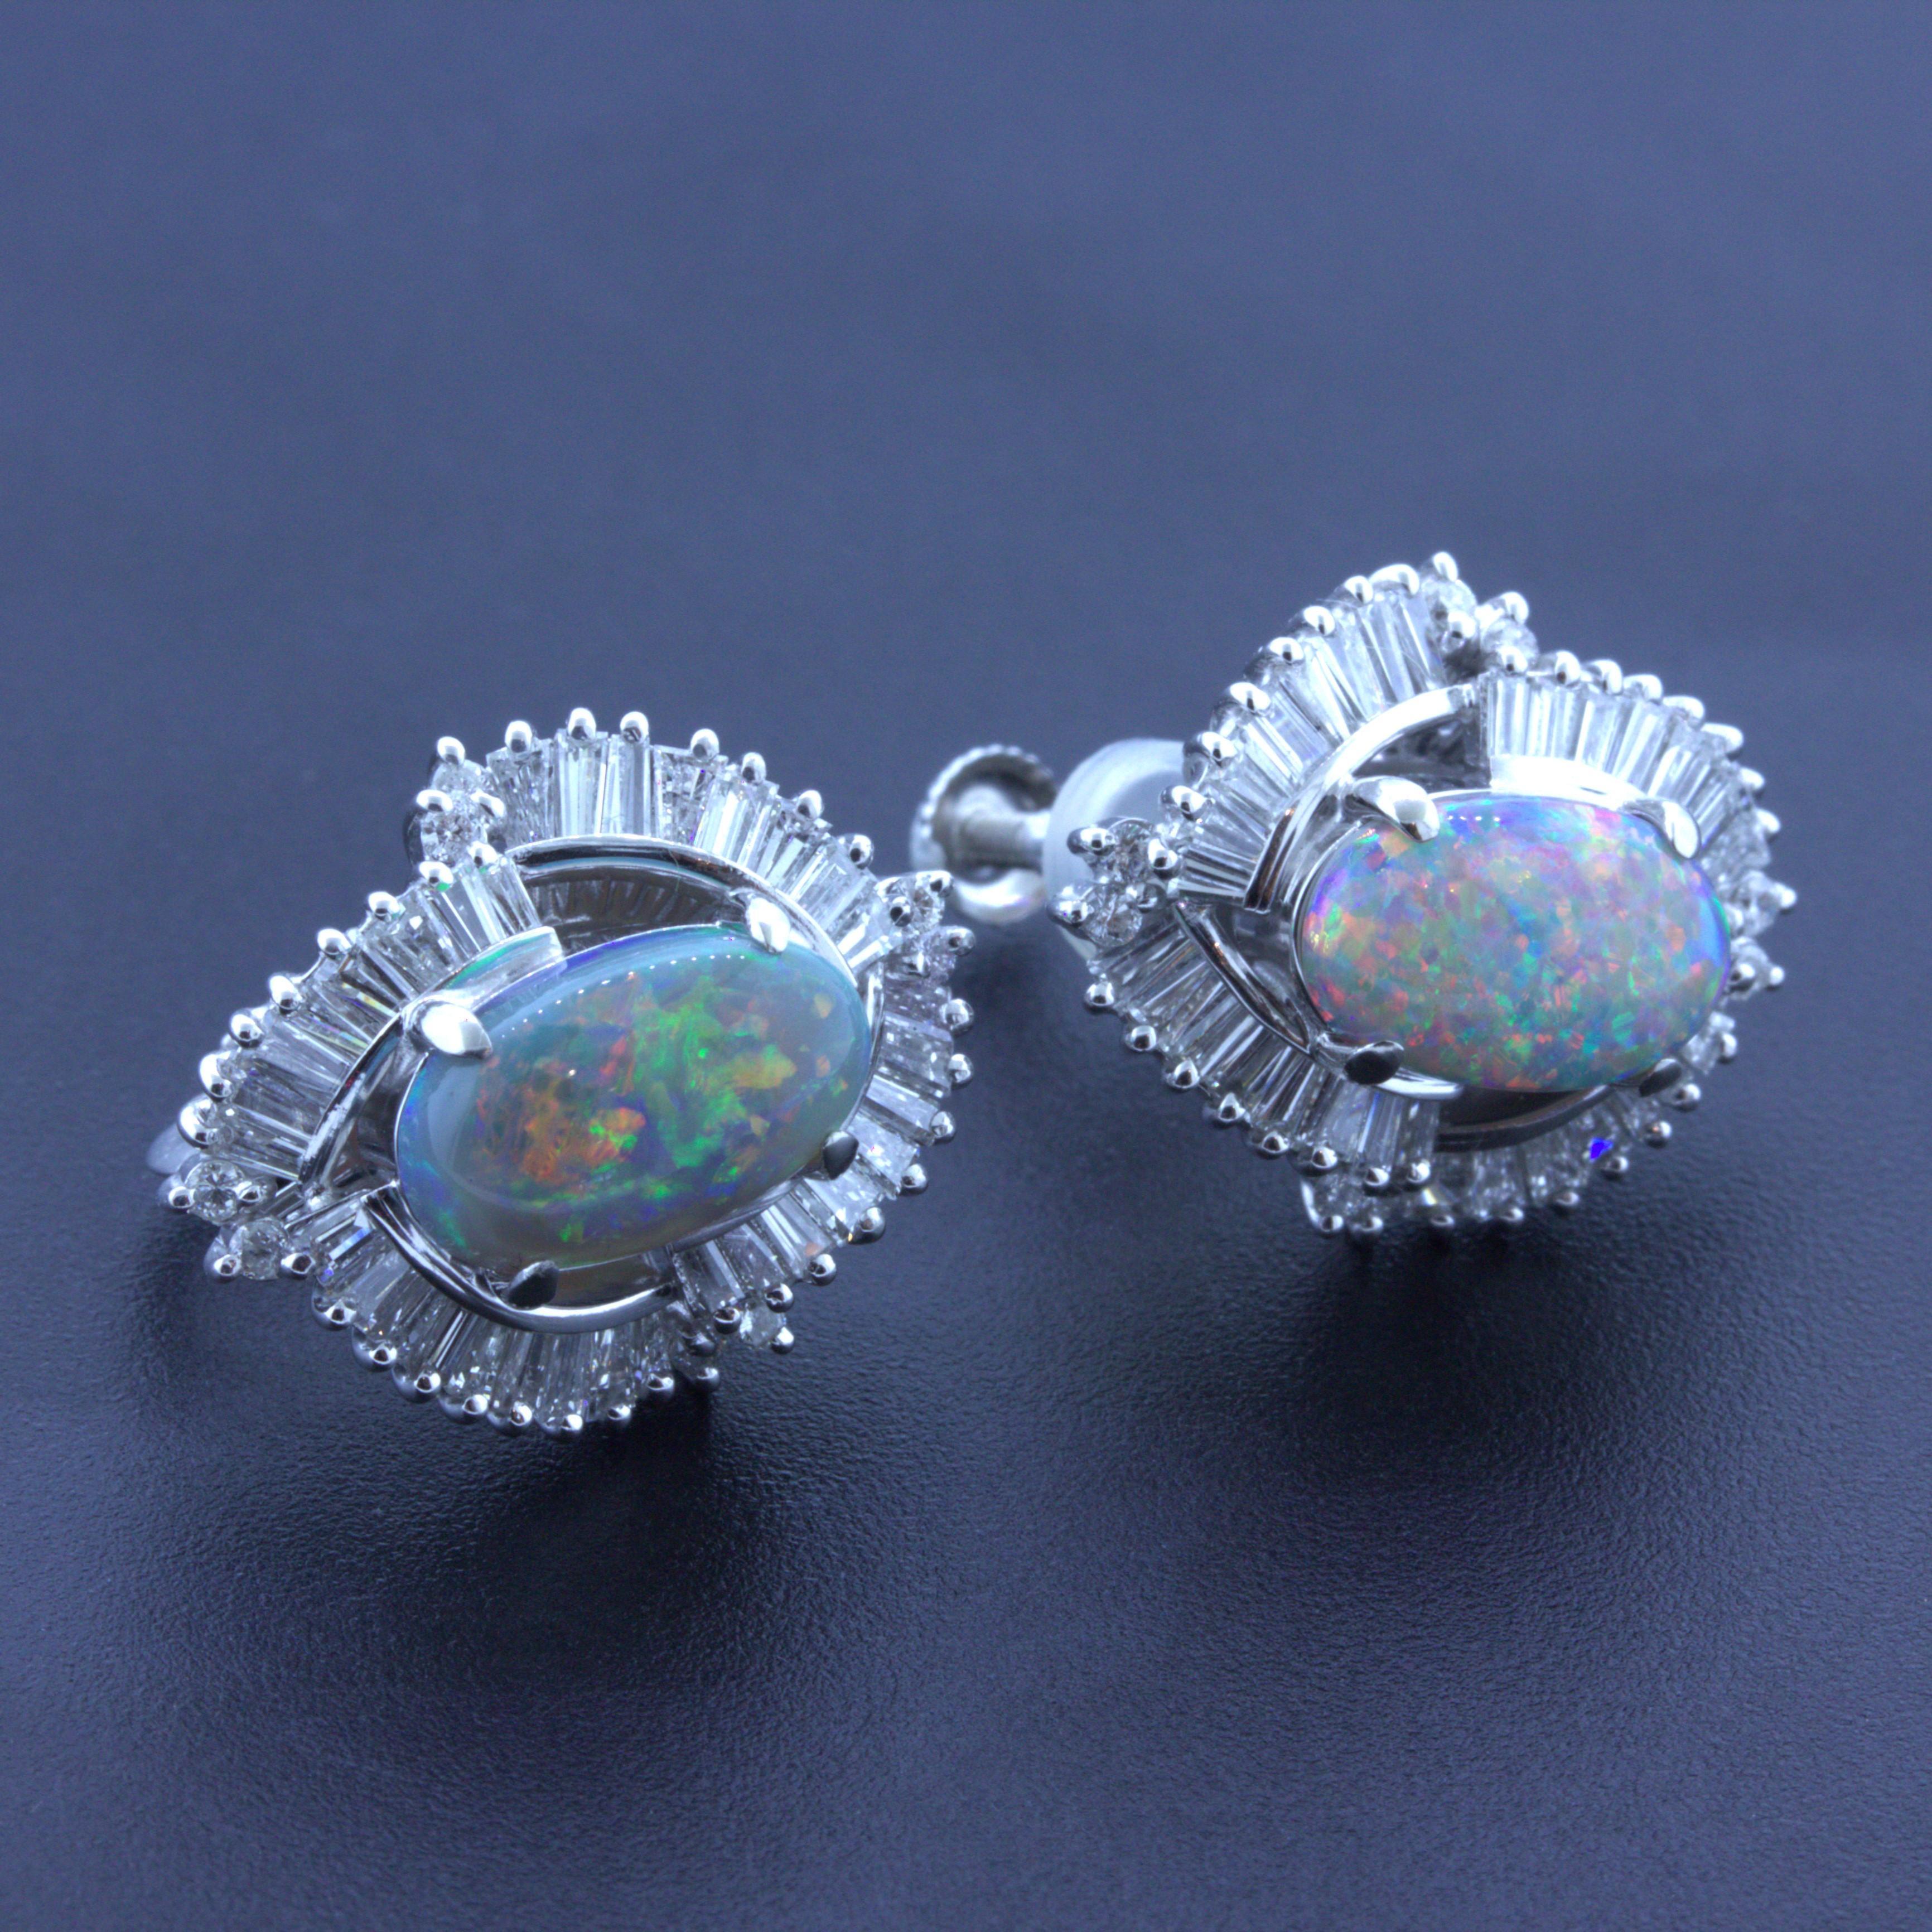 Une paire de boucles d'oreilles en opale noire australienne douce et élégante. Les opales pèsent au total 3,72 carats et présentent un grand jeu de couleurs, des éclats de rouge, de vert, de bleu, de jaune et d'orange étant visibles sur les deux